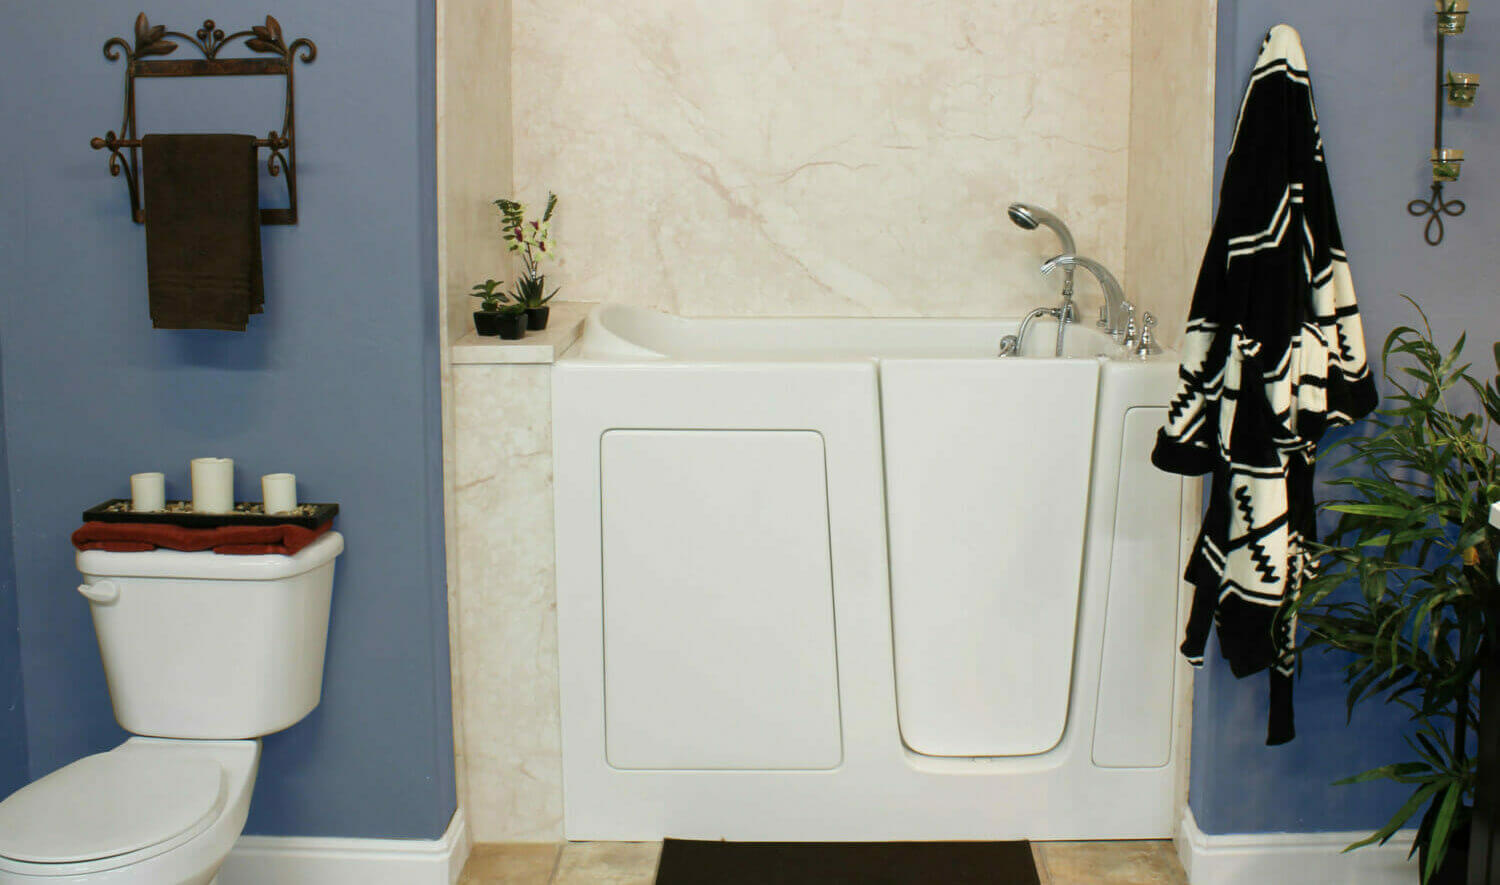 Five Star Bath Solutions of Buford Walk-in Bathtub Installation